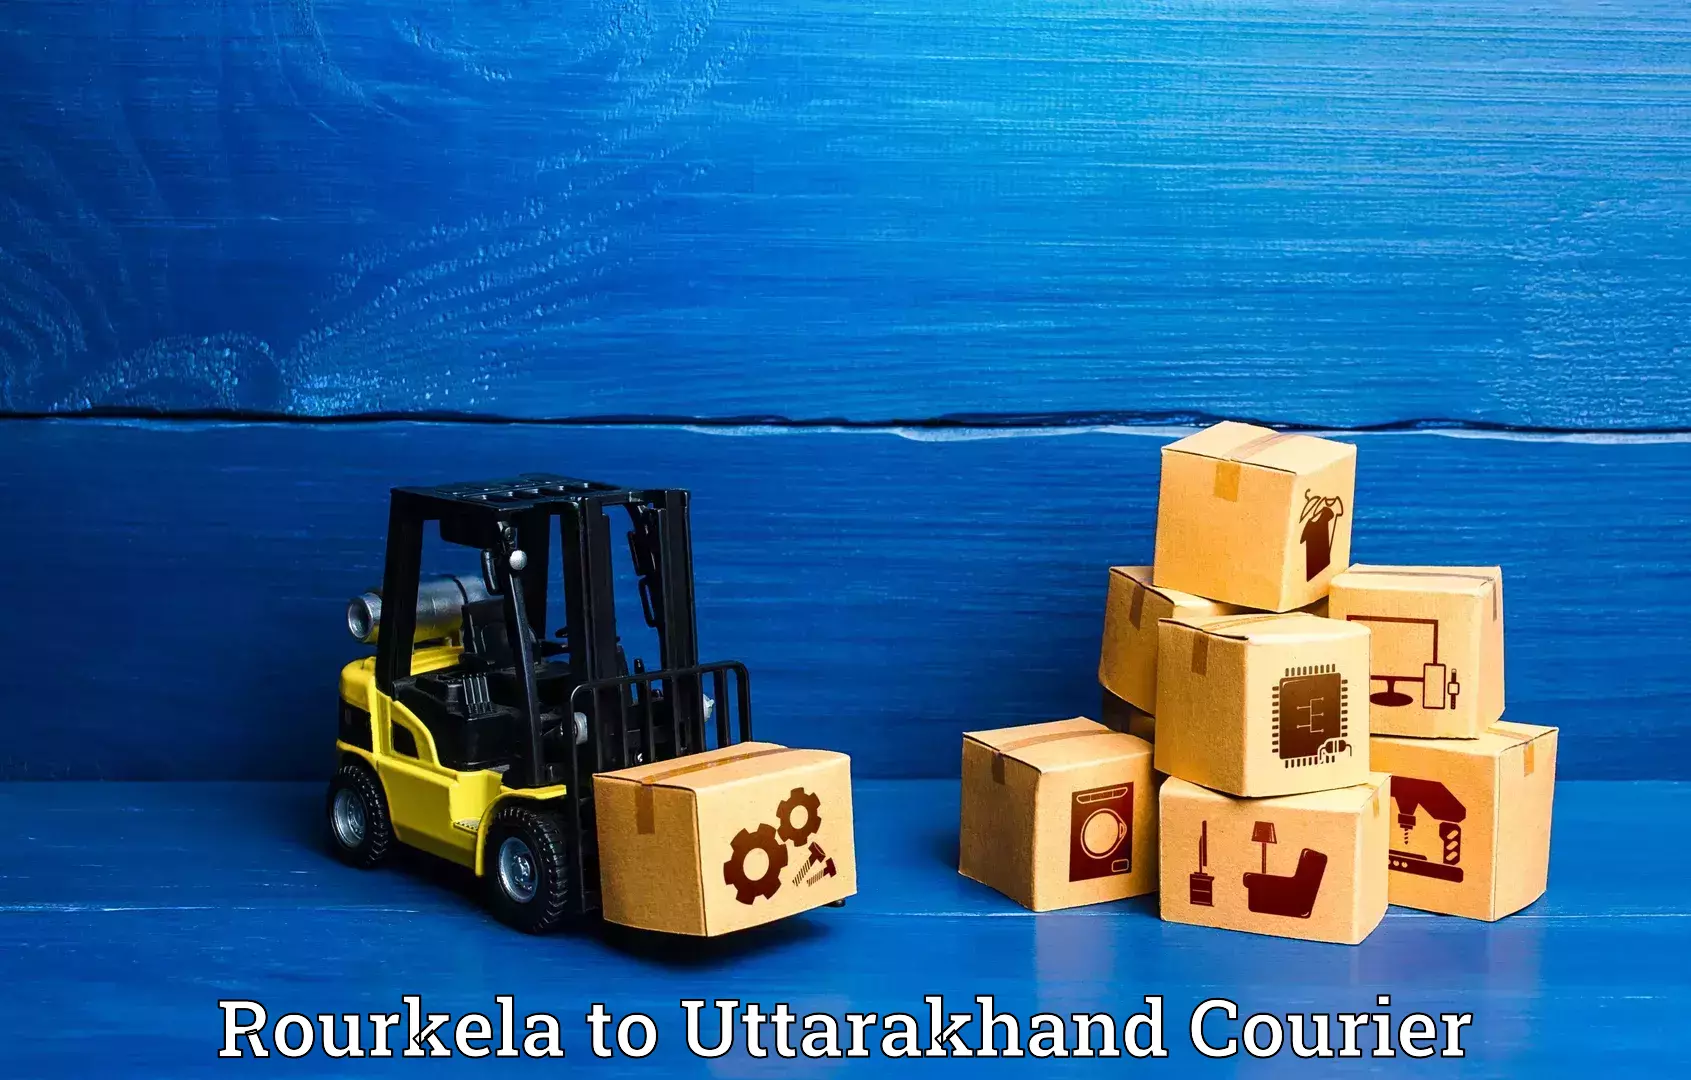 Personalized luggage shipping in Rourkela to Uttarakhand